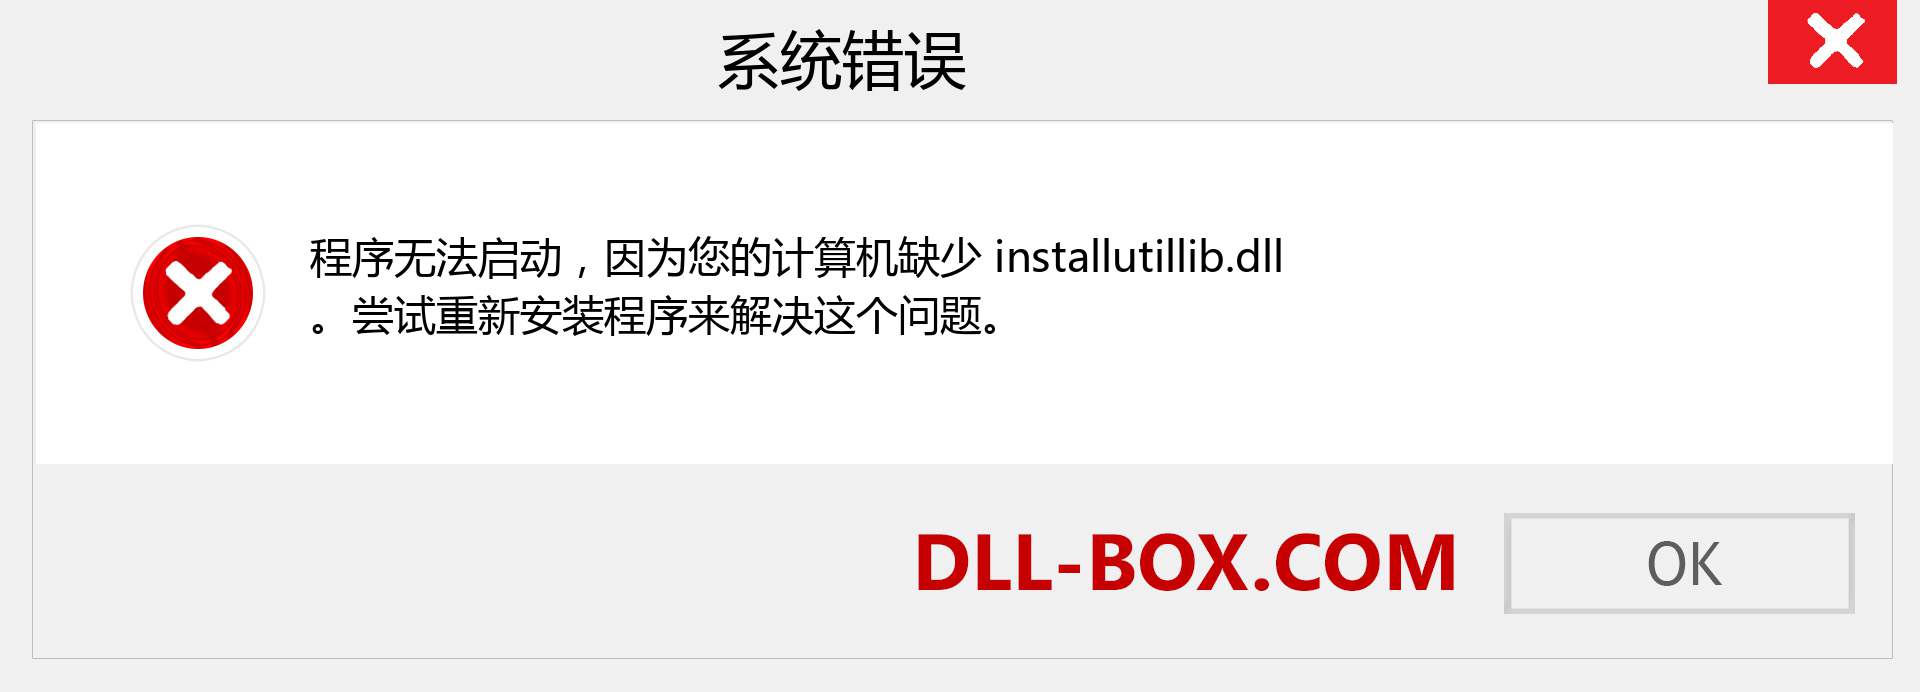 installutillib.dll 文件丢失？。 适用于 Windows 7、8、10 的下载 - 修复 Windows、照片、图像上的 installutillib dll 丢失错误